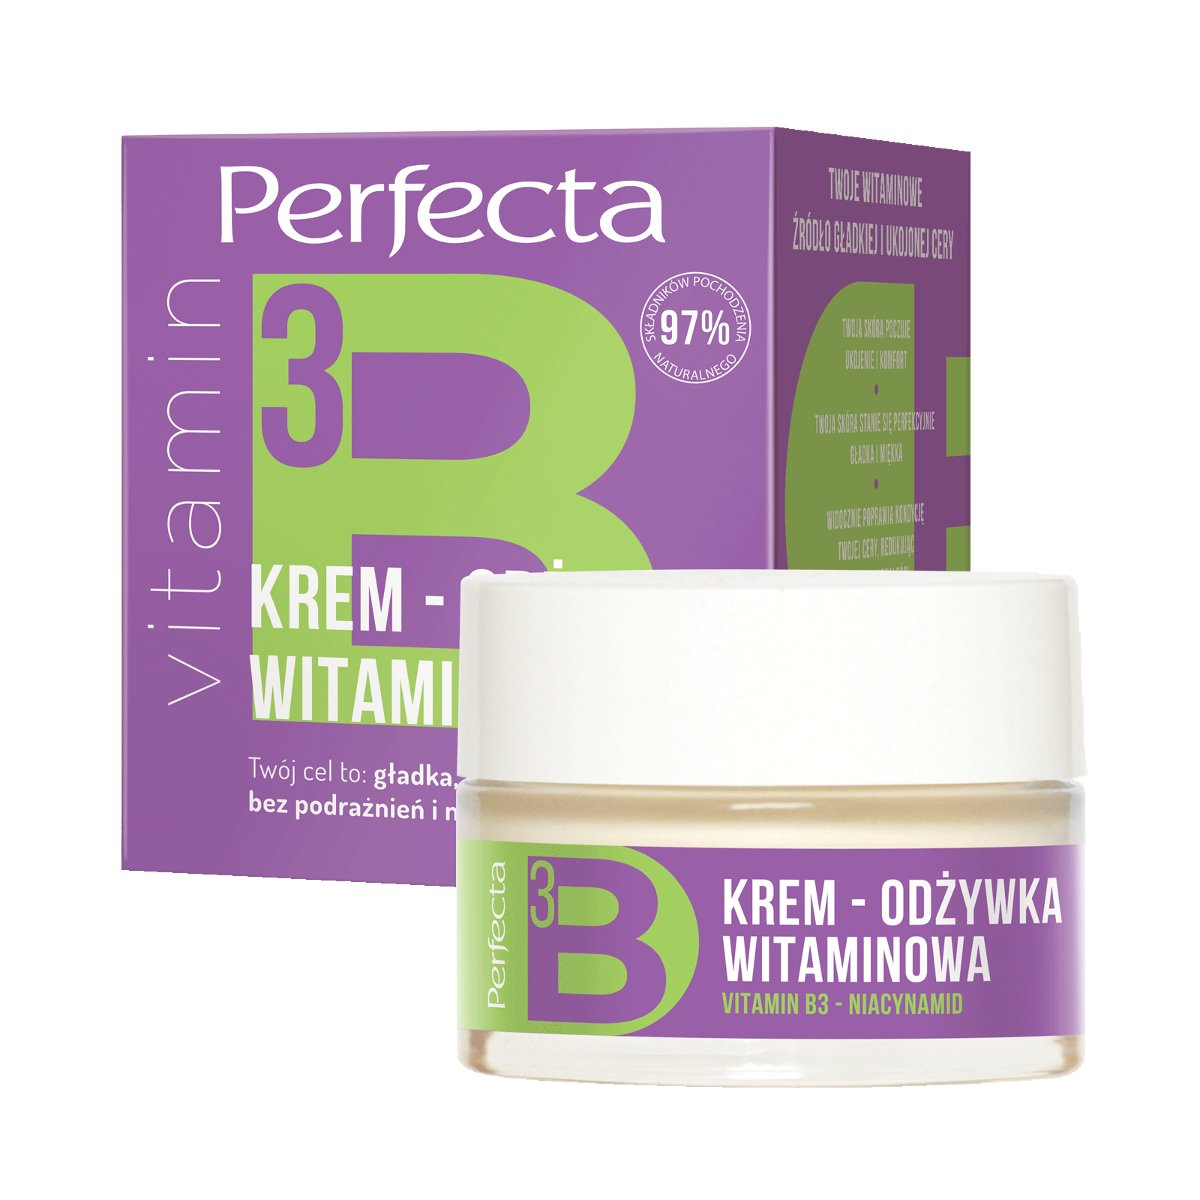 Perfecta DAX Cosmetics BIO VITAMIN Krem-odżywka witaminowa B3, 50 ml 5900525078421